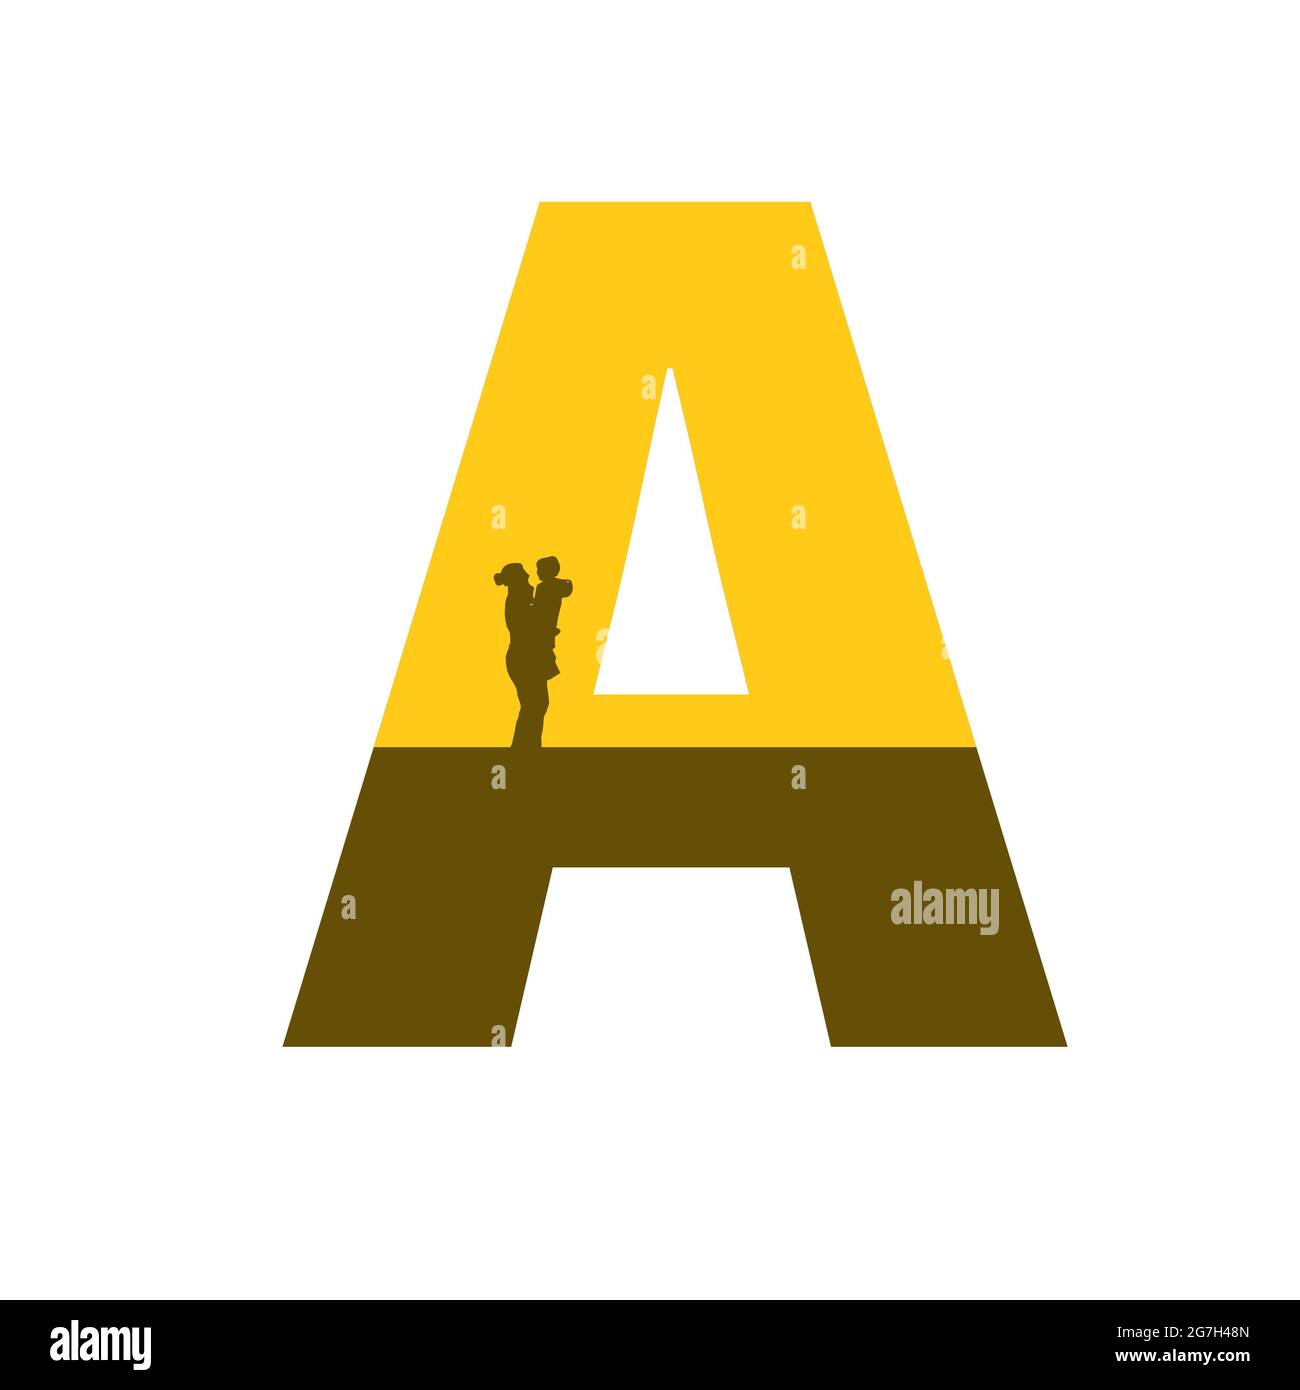 Lettera A dell'alfabeto fatta con una silhouette di madre con bambino sul braccio, di colore ocra e marrone, isolata su sfondo bianco Foto Stock